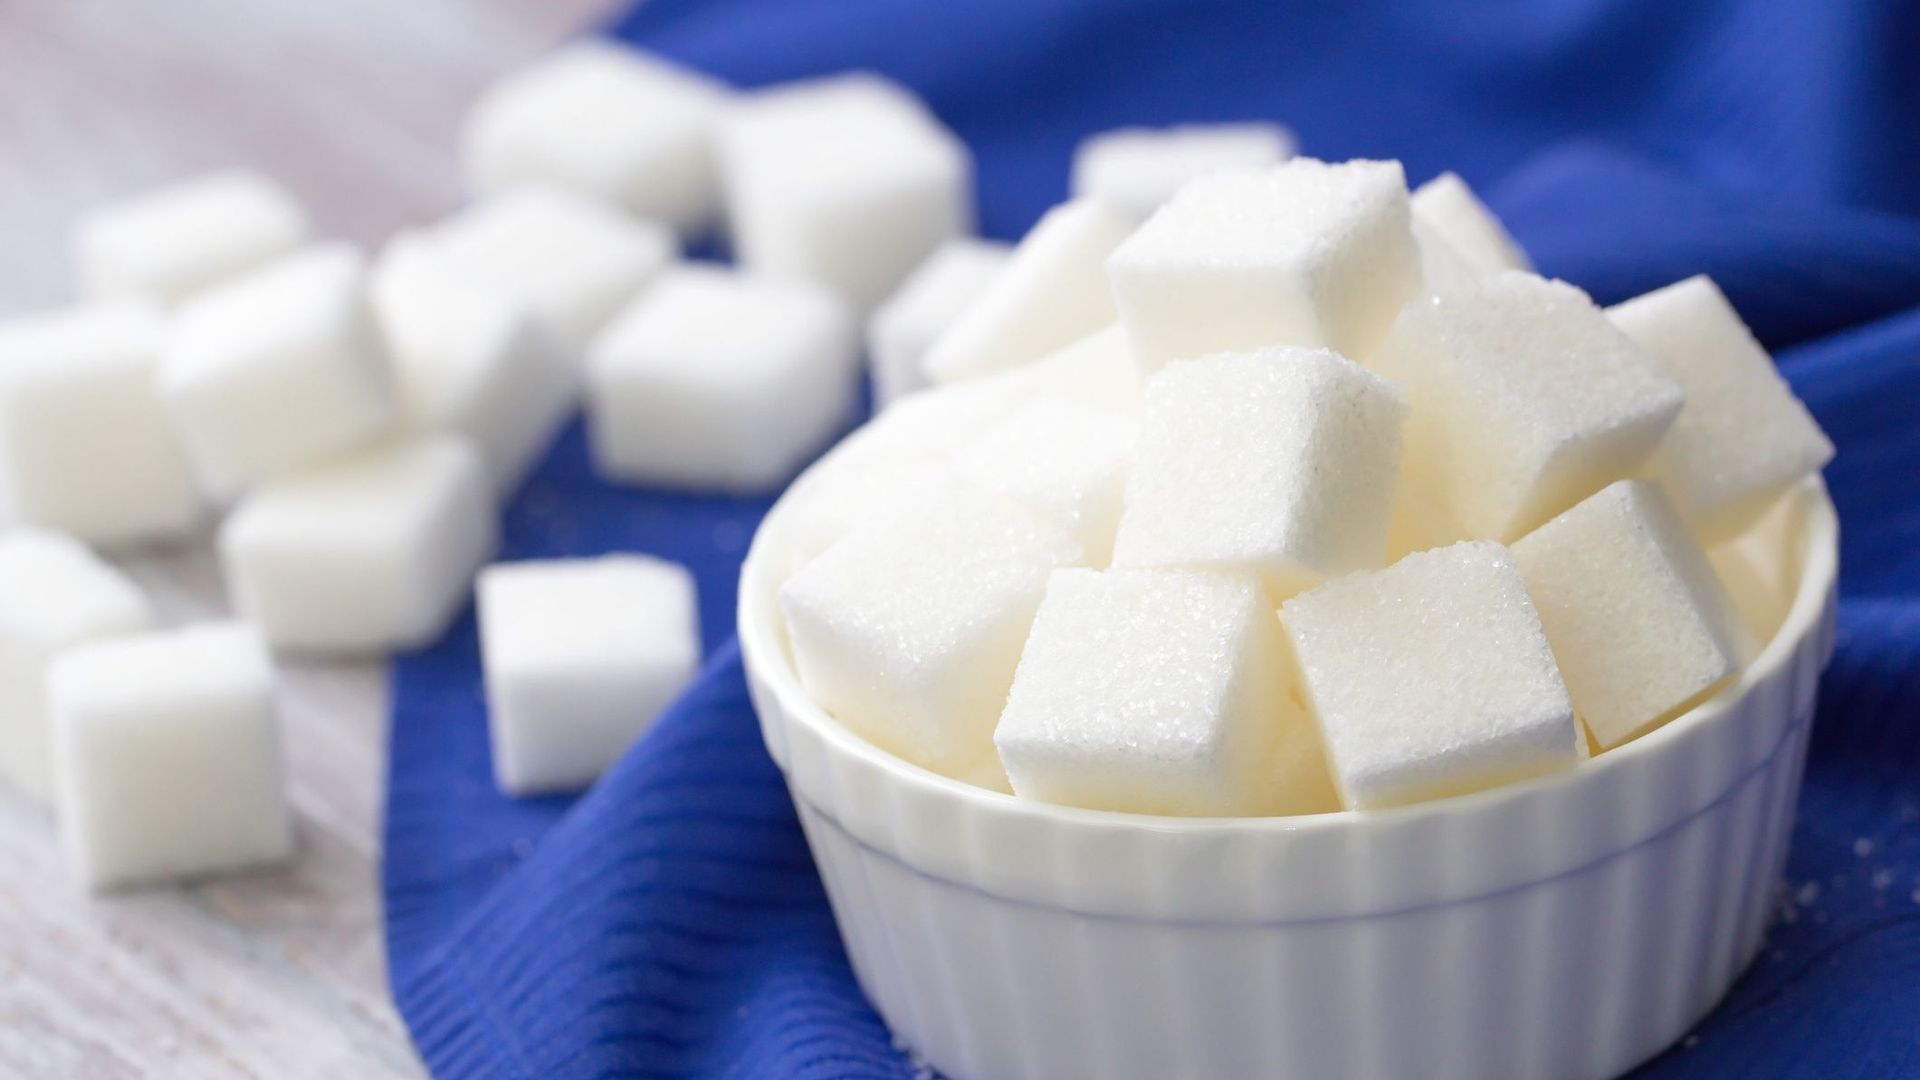 Trop de sucre dans le sang: risque accru de tuberculose, selon des chercheurs